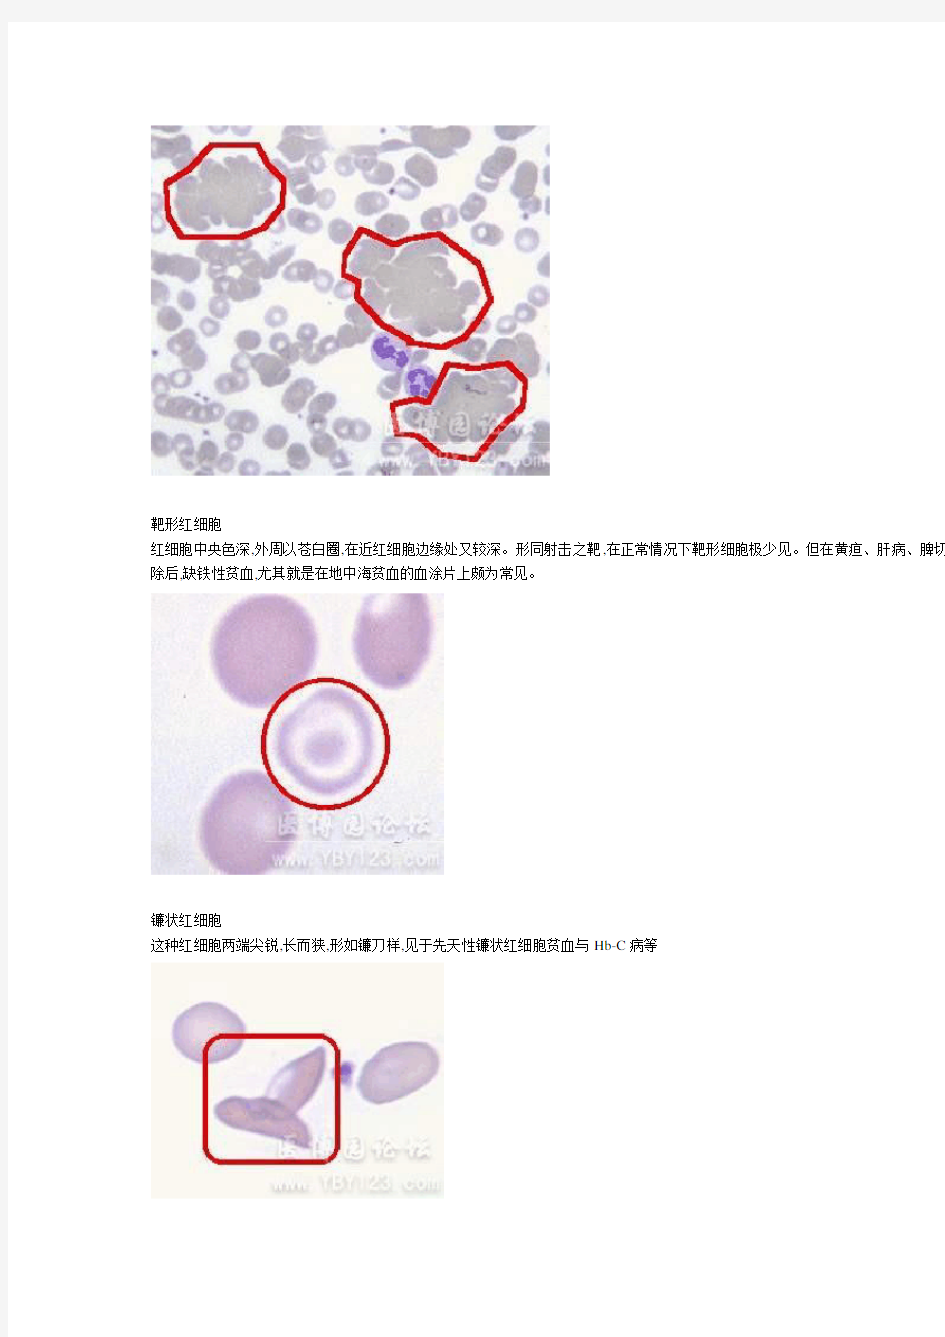 各种血细胞模式图24389